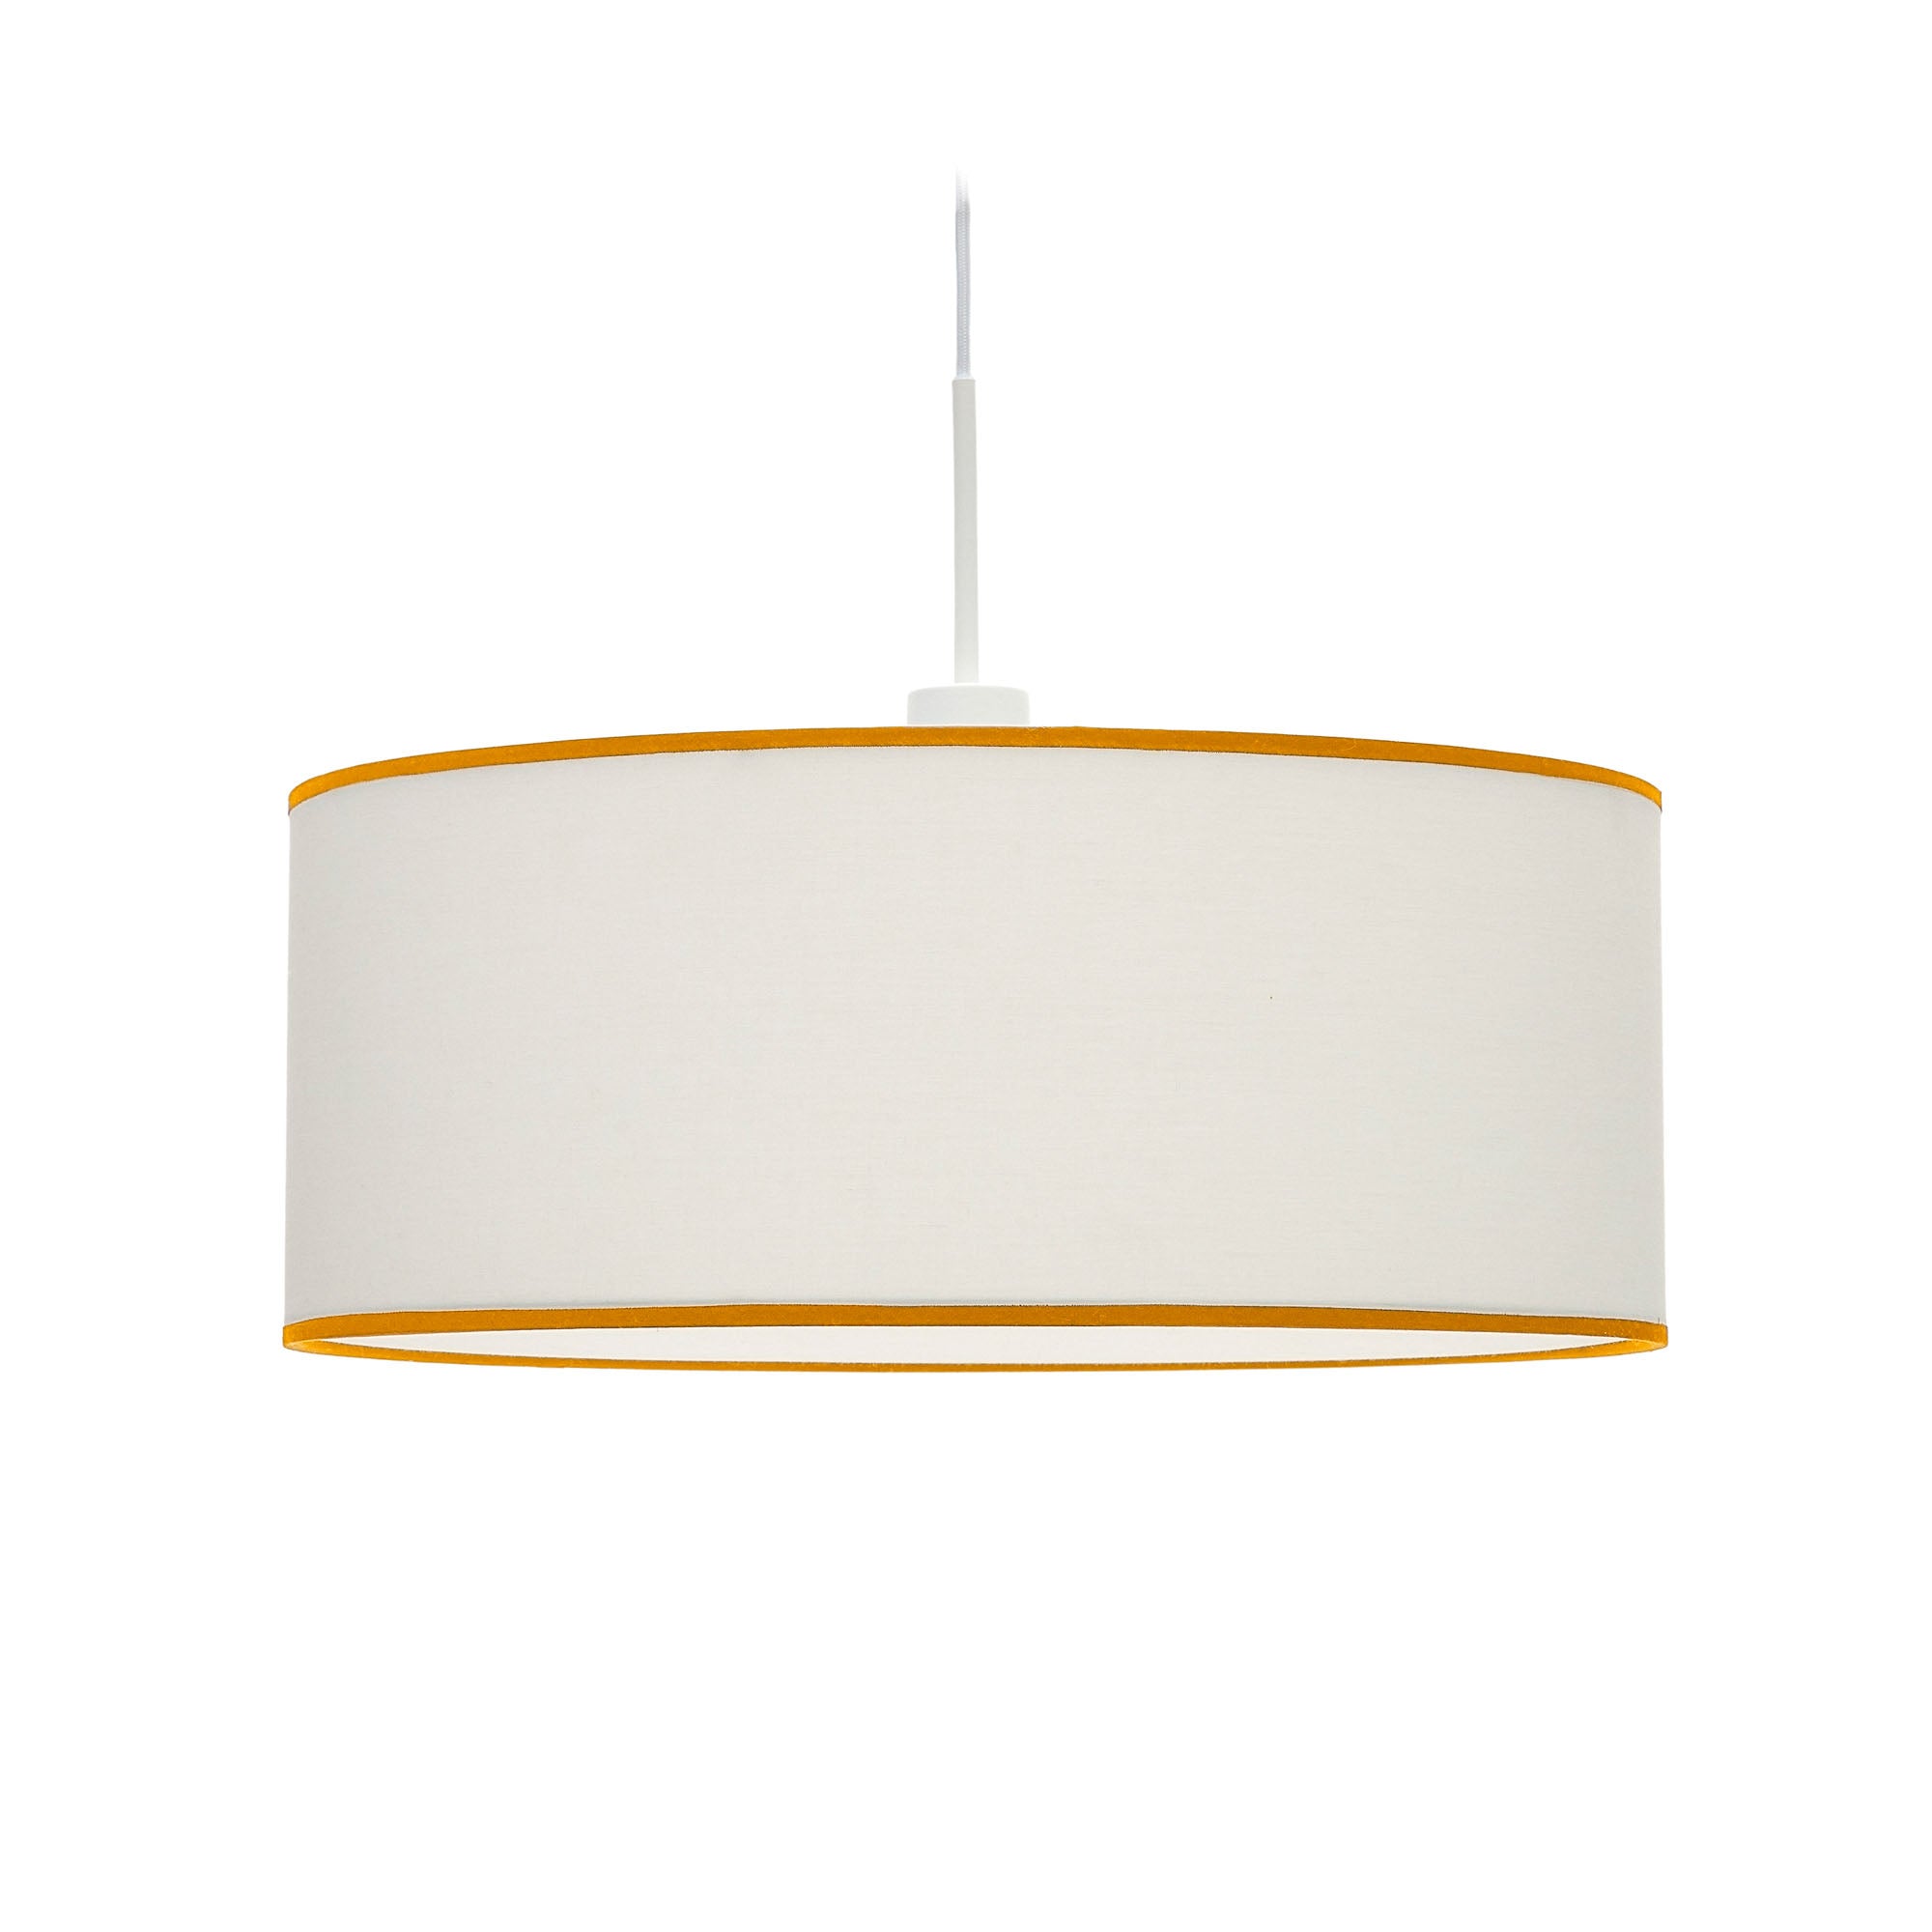 Binisalem mennyezeti lámpaernyő fehér és mustár színben, Ø 50 cm